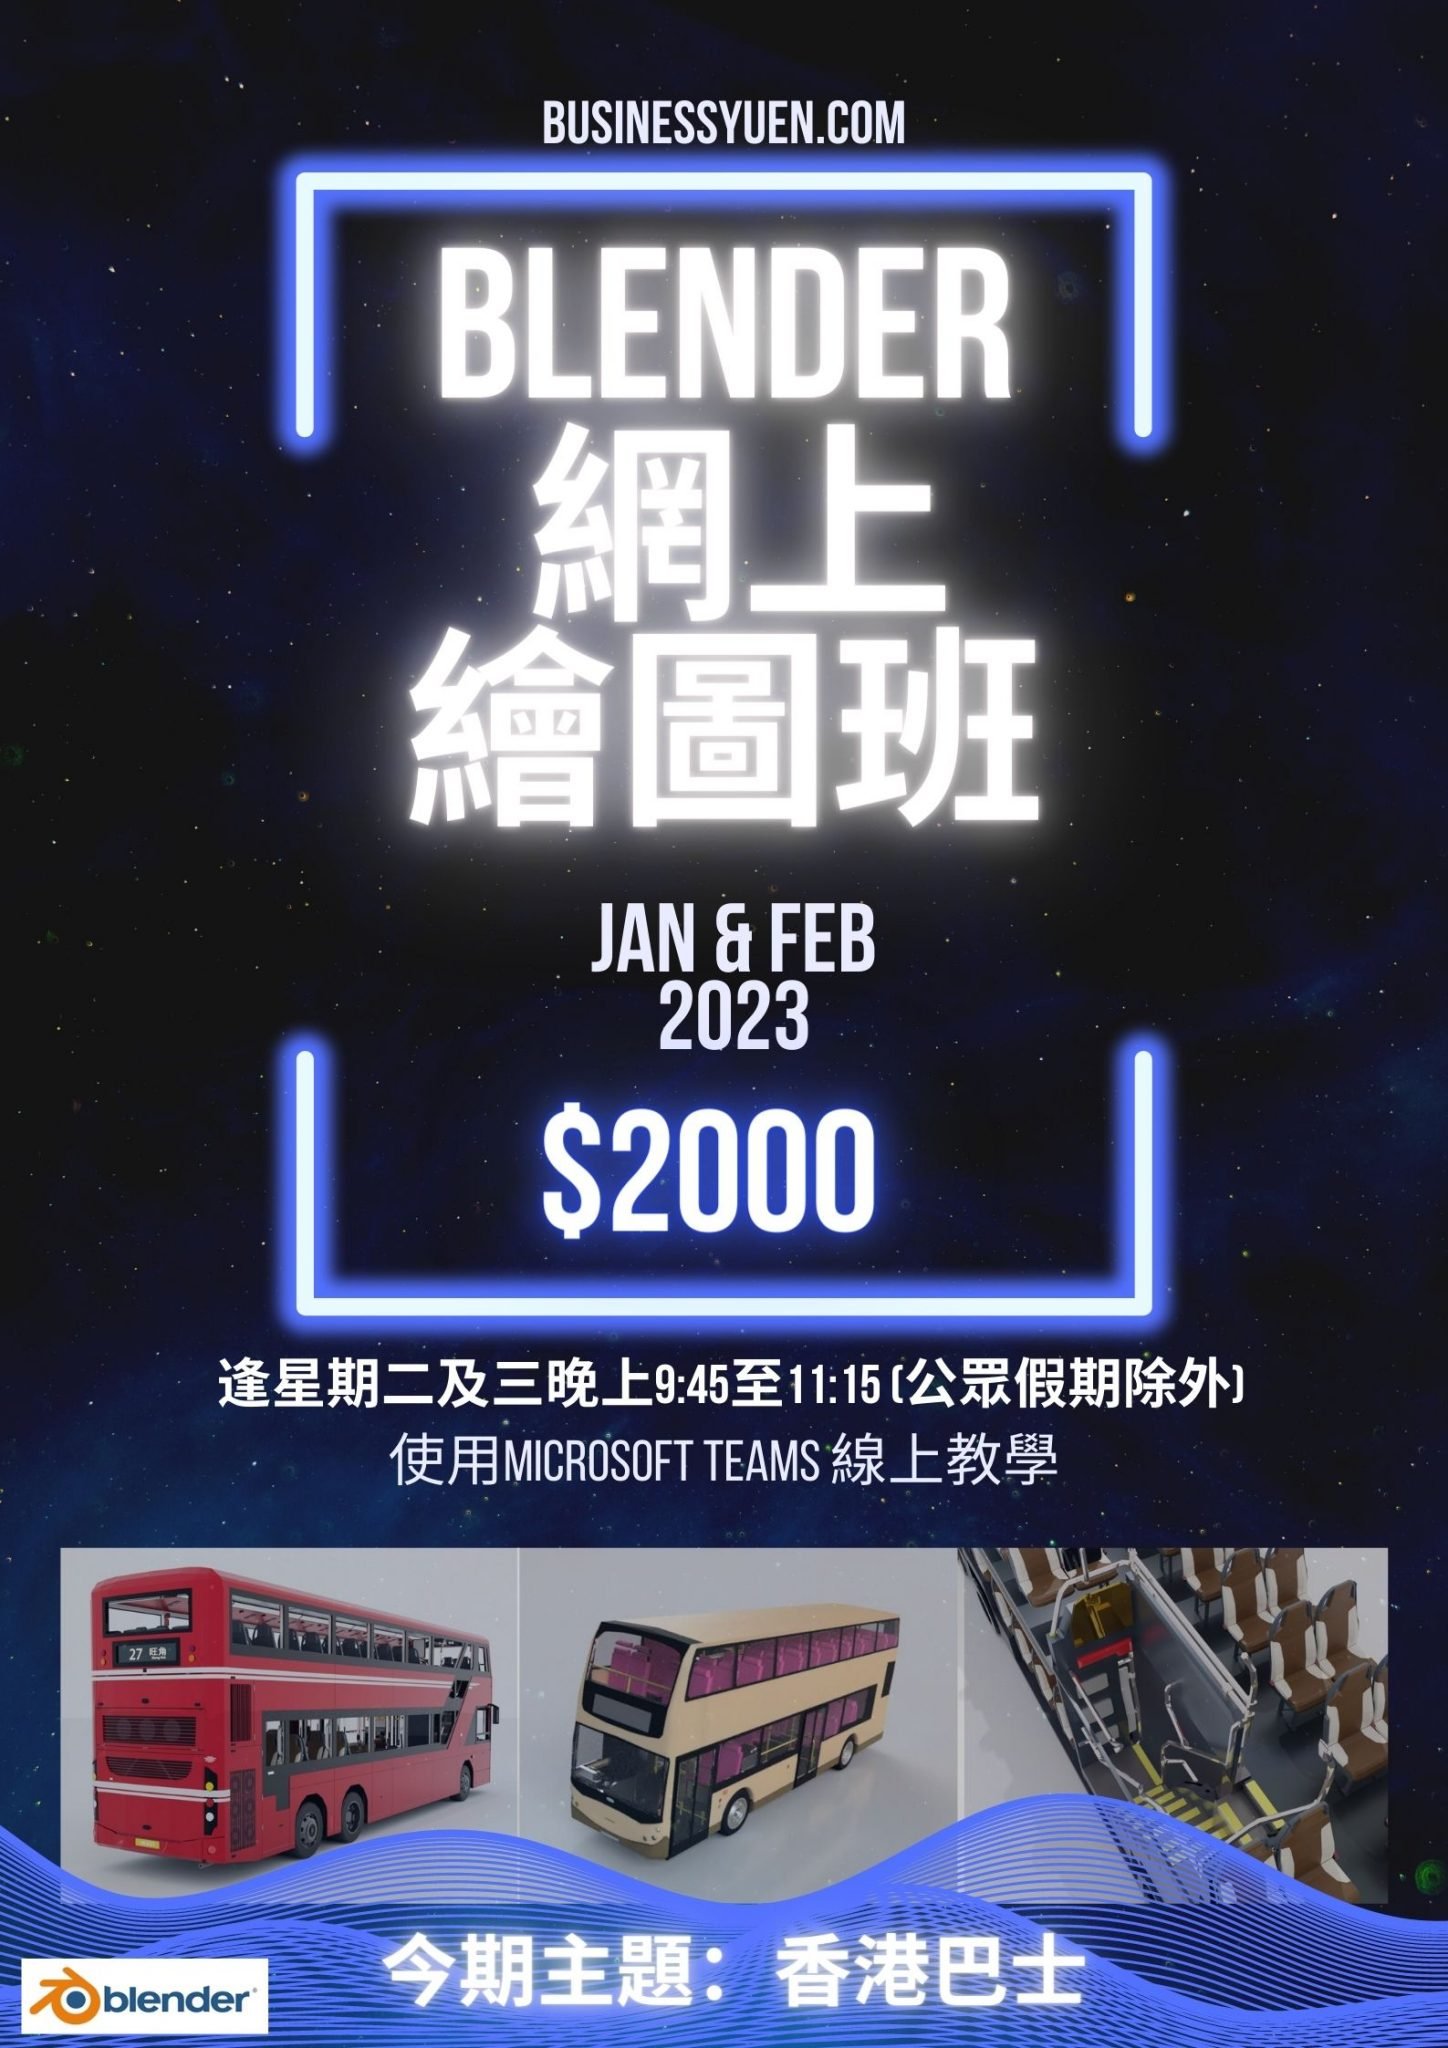 Blender 網上繪圖班 巴士 (熱狗巴)